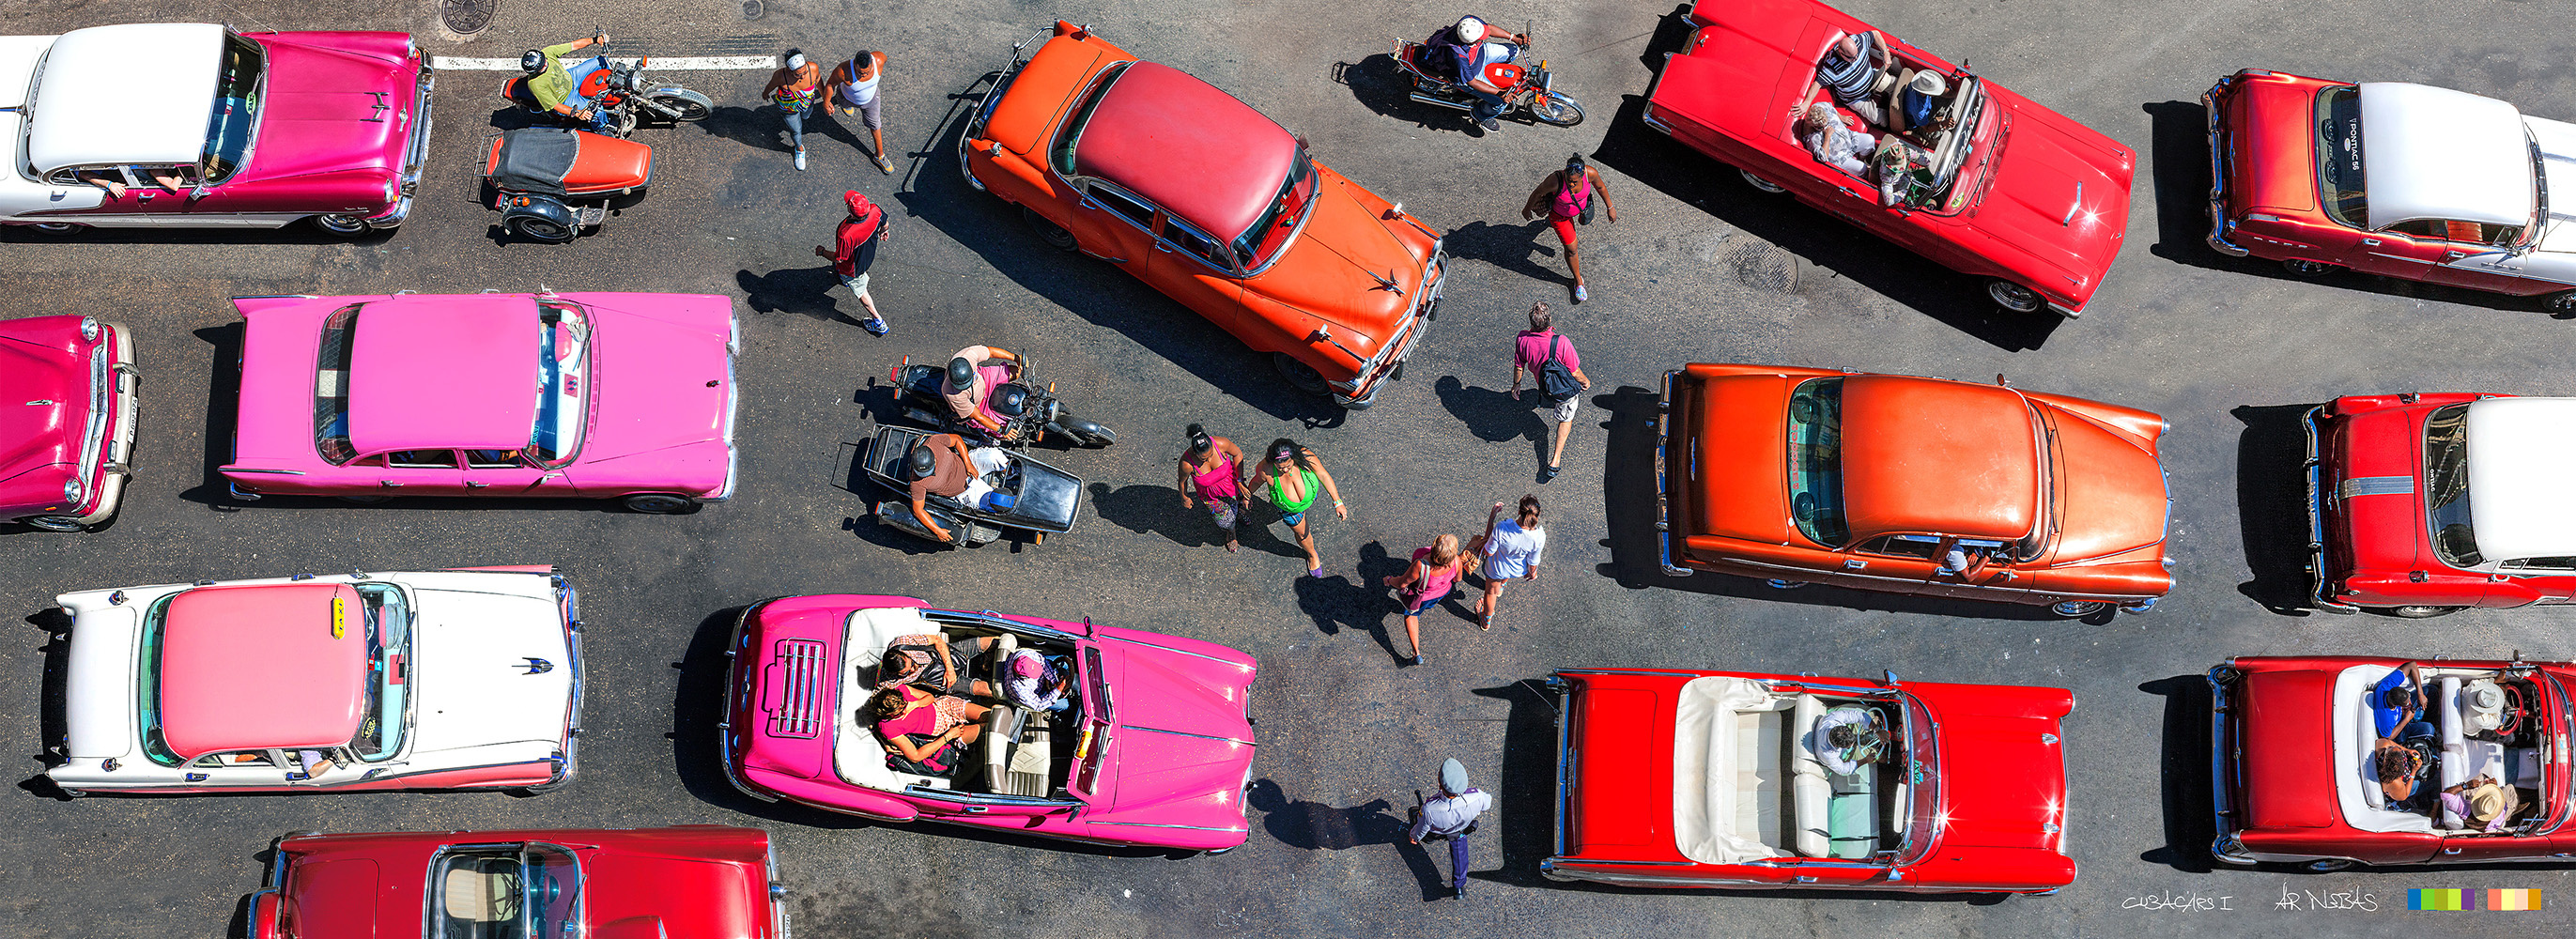 Cuba-Cars I, 1500 x 600 mm, Fotoprint